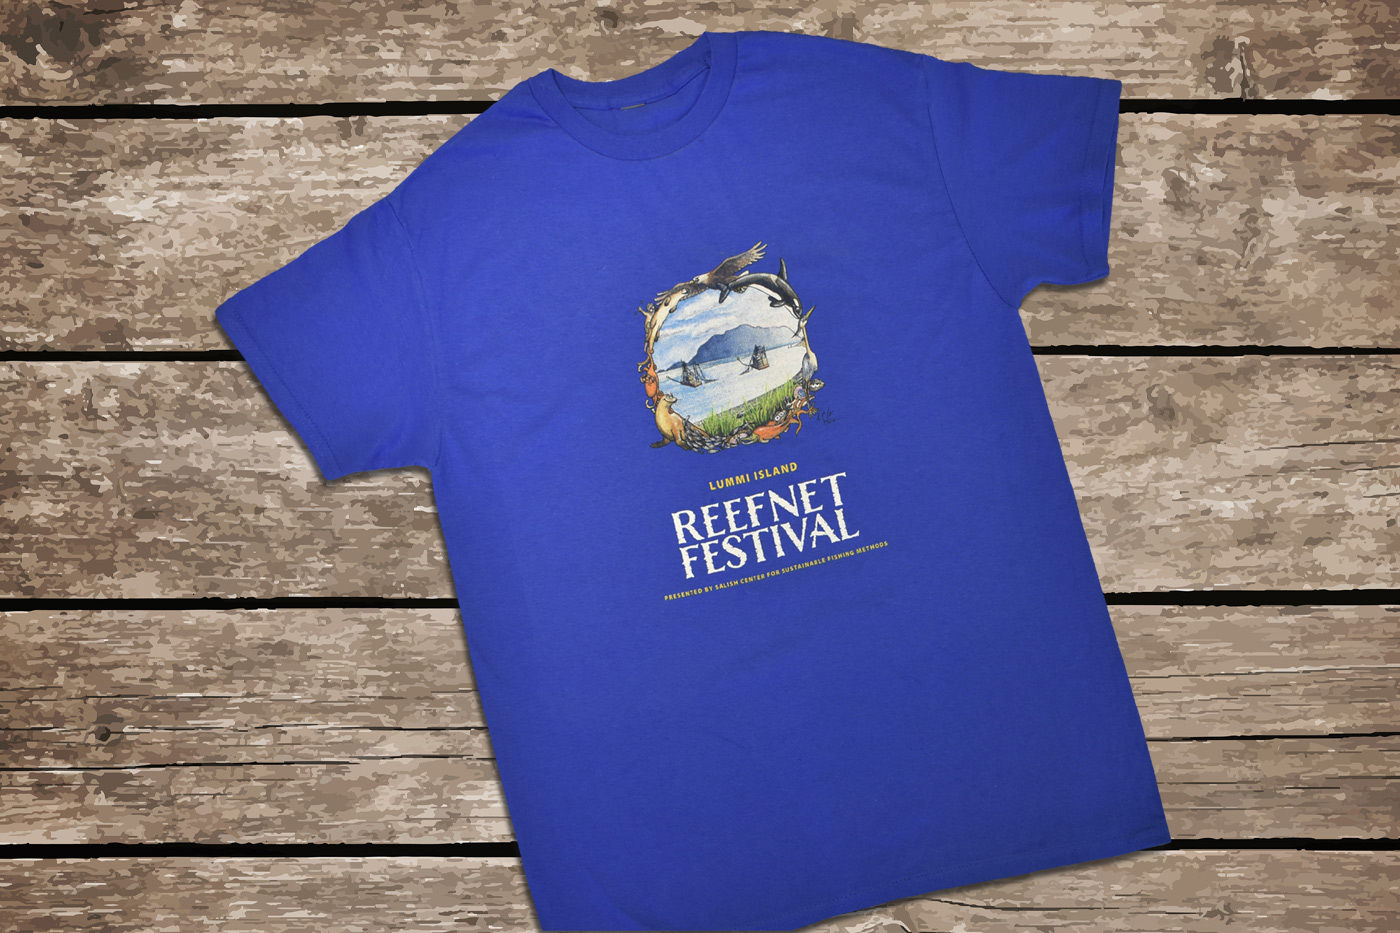 Reefnet Festival t-shirt, front